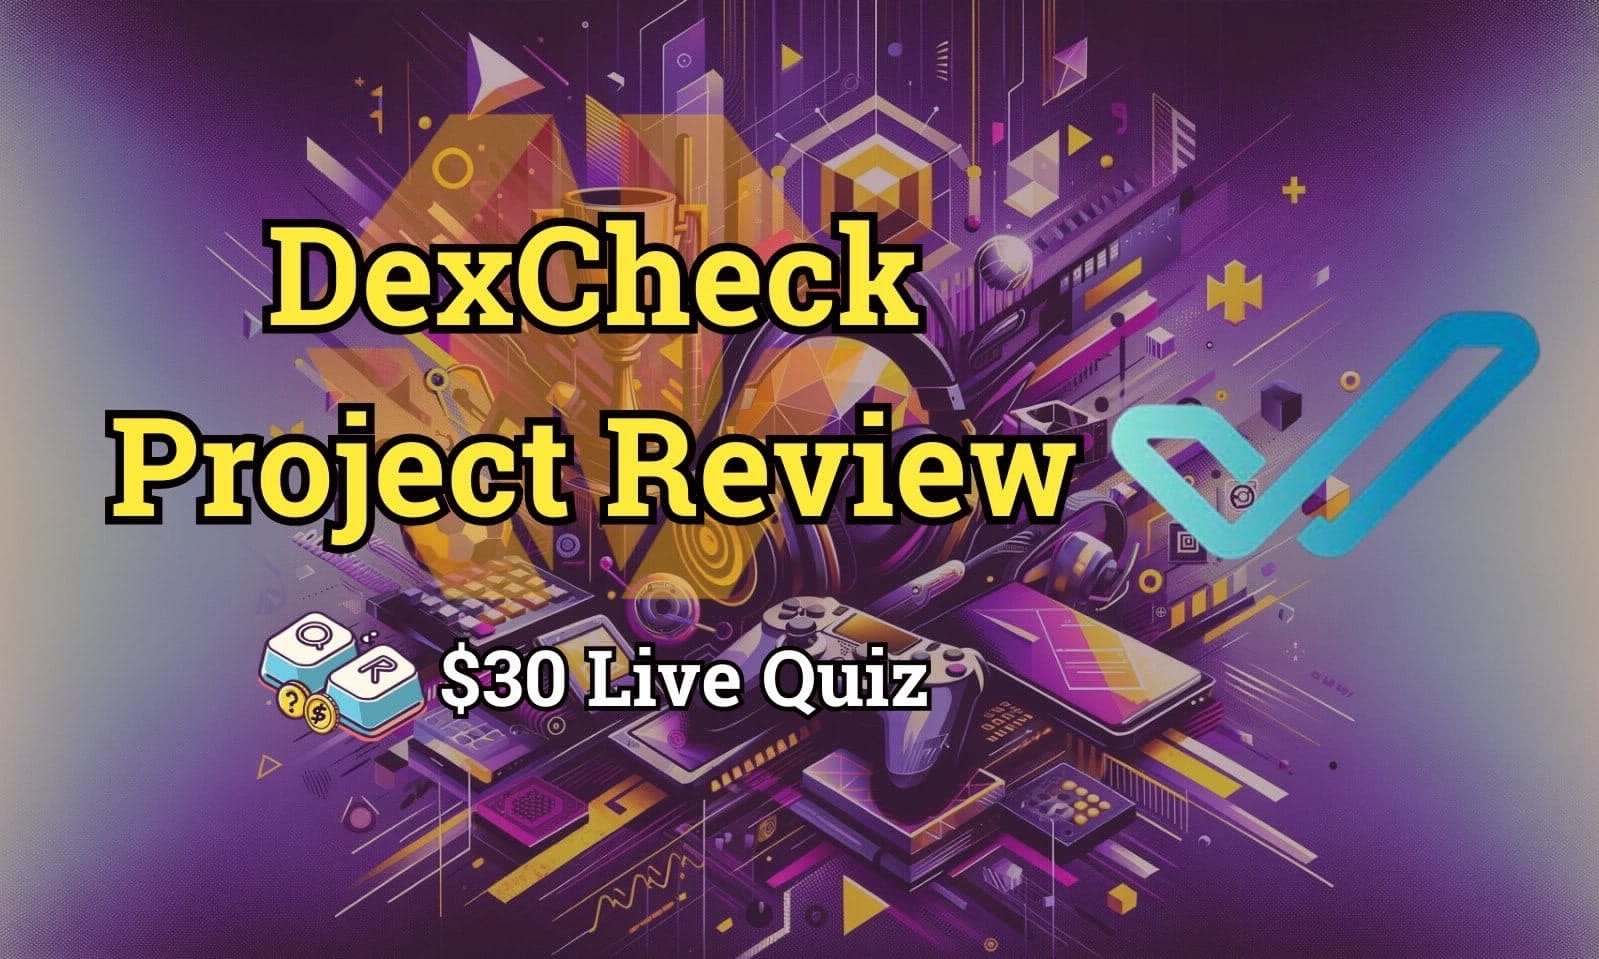 DexCheck Project Review & $30 Live Quiz | $100 Live Boxes